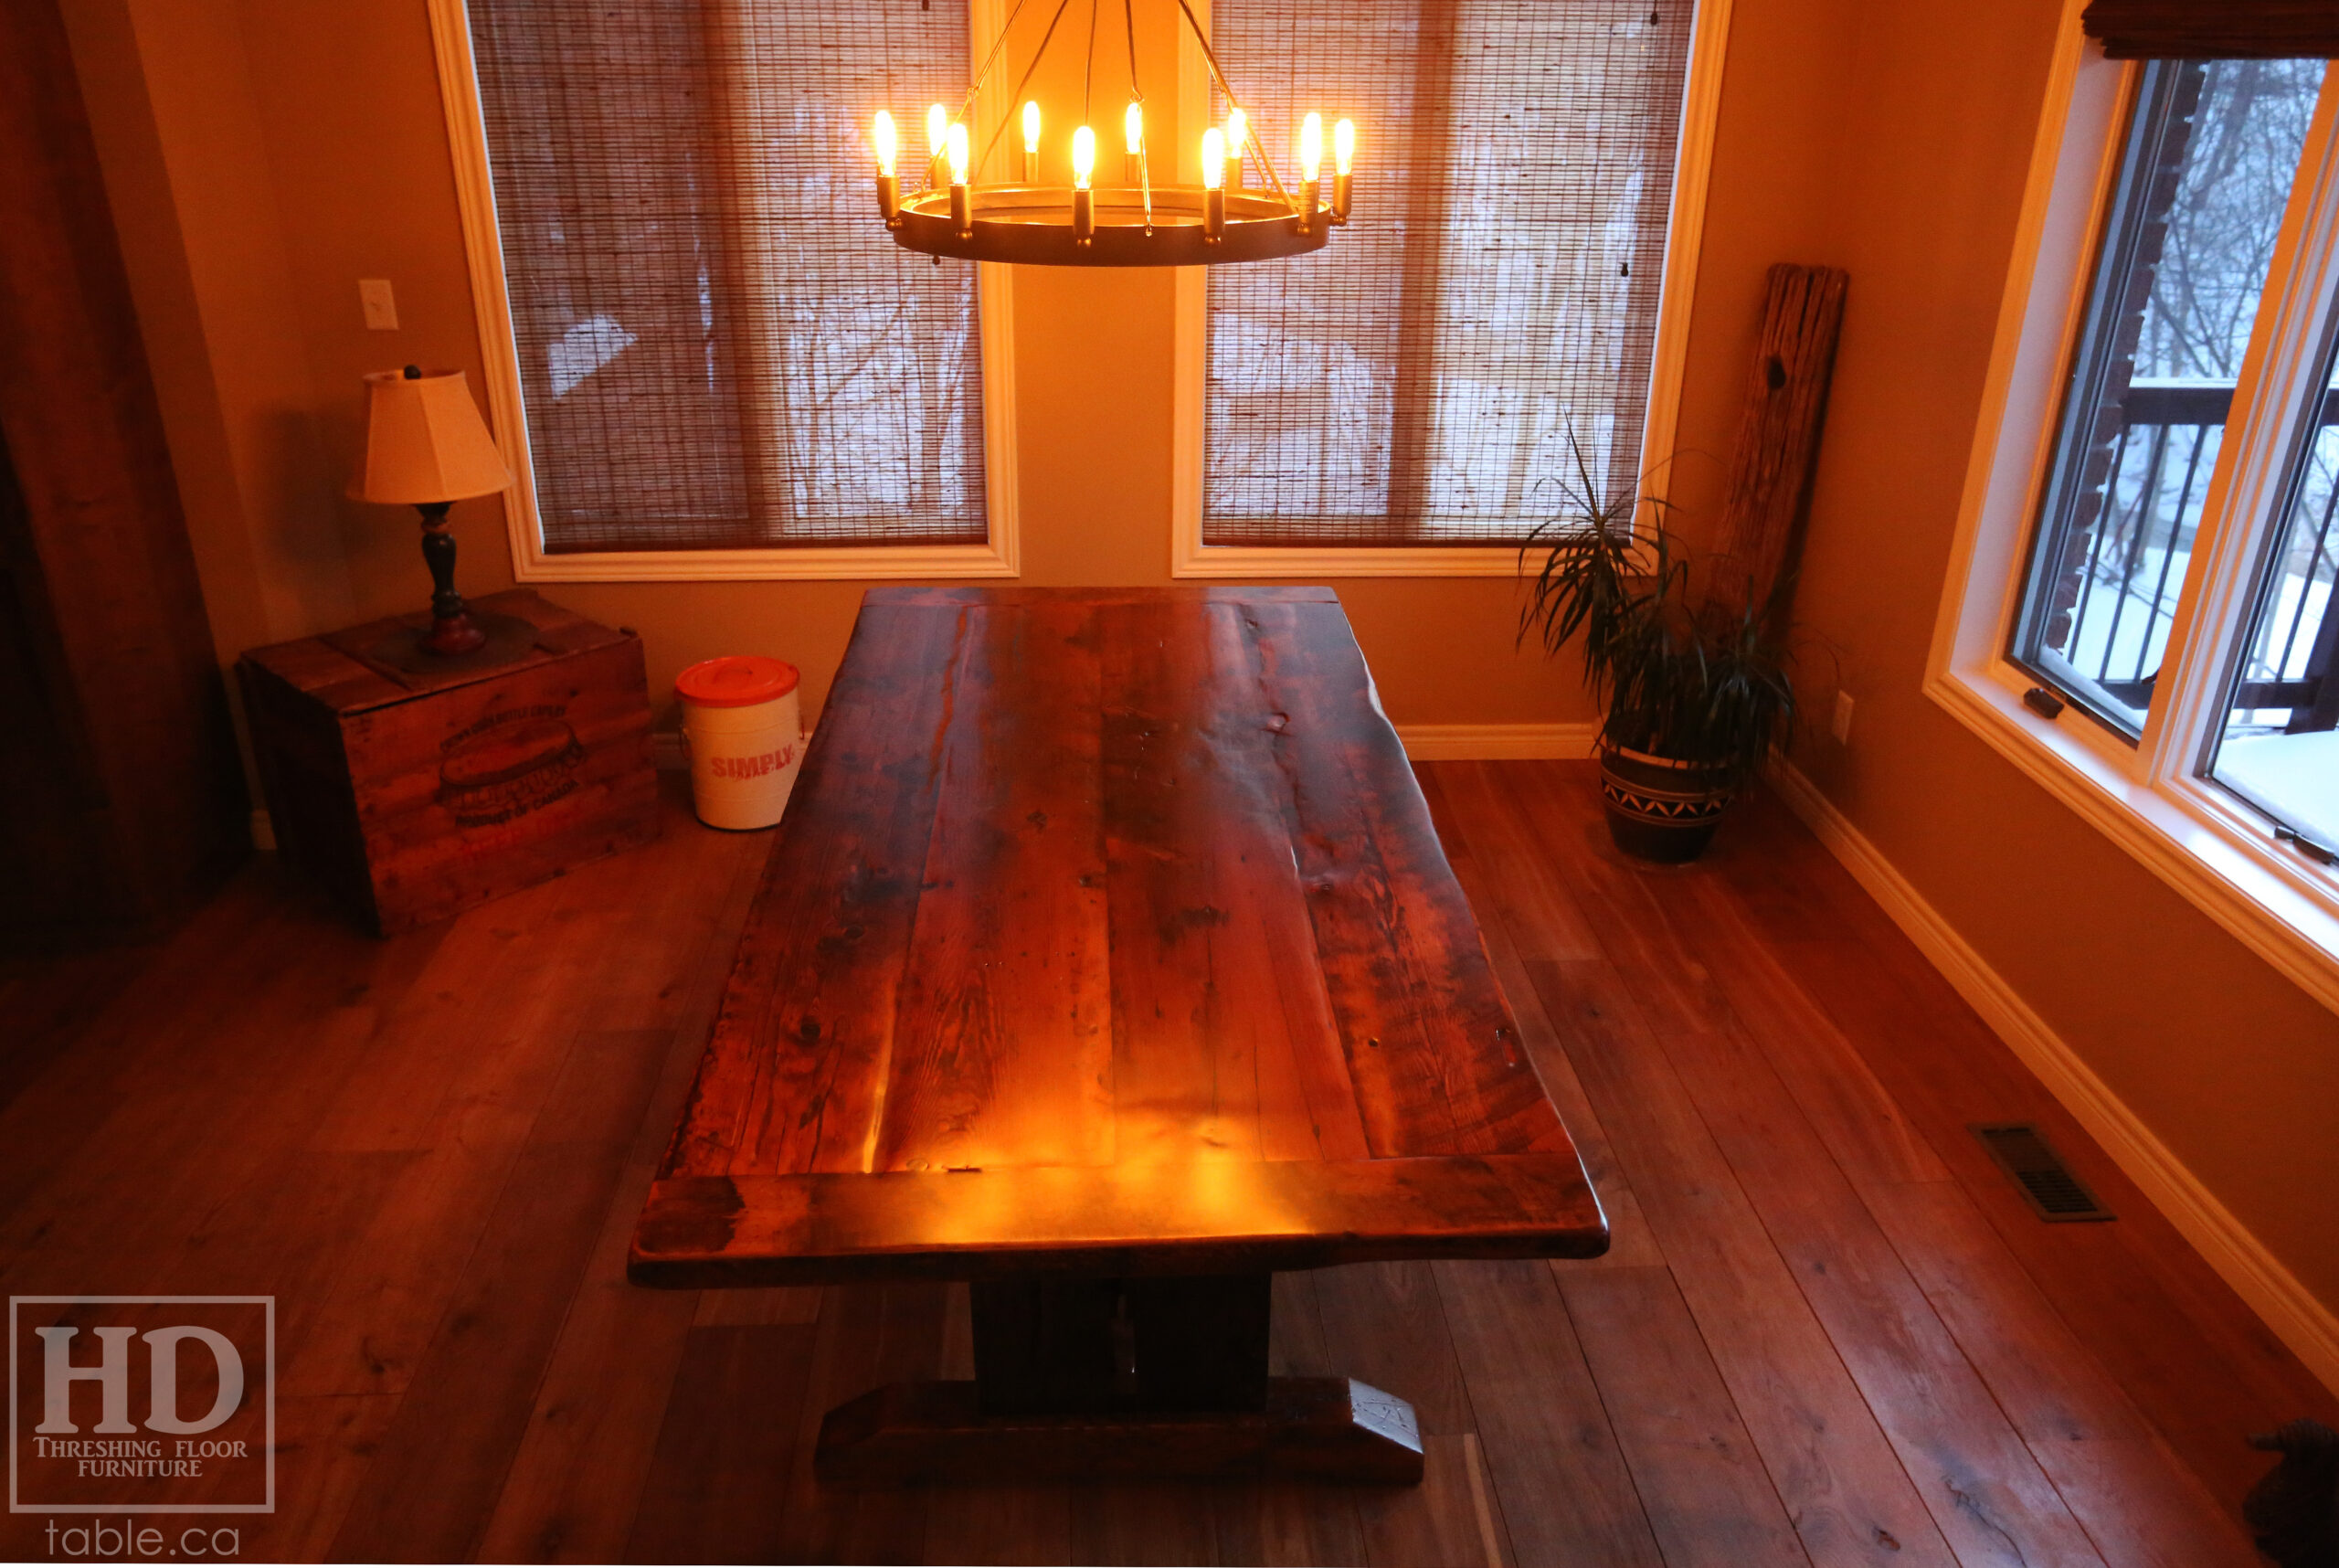 Hemlock Table by HD Threshing Floor Furniture / www.table.ca